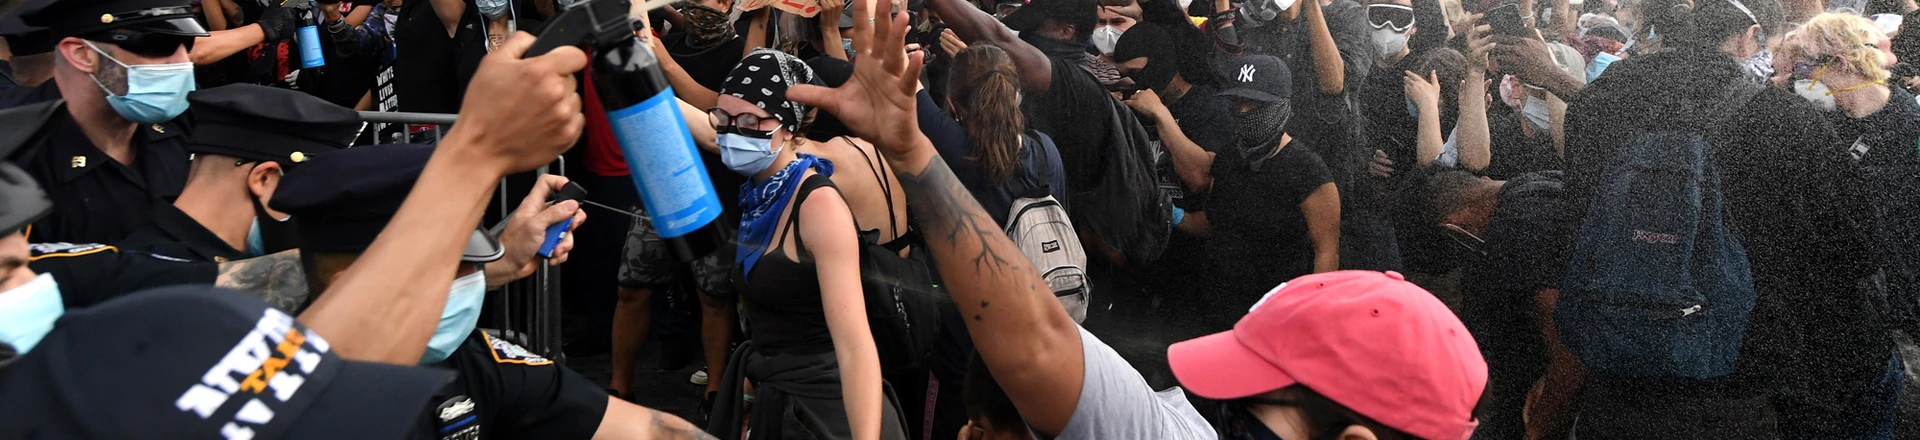 Policiais de Nova York jogam spray de pimenta na multidão de manifestantes reunidos no Barclays Center para protestar contra o recente assassinato de George Floyd em 29 de maio, no Brooklyn, Nova York.